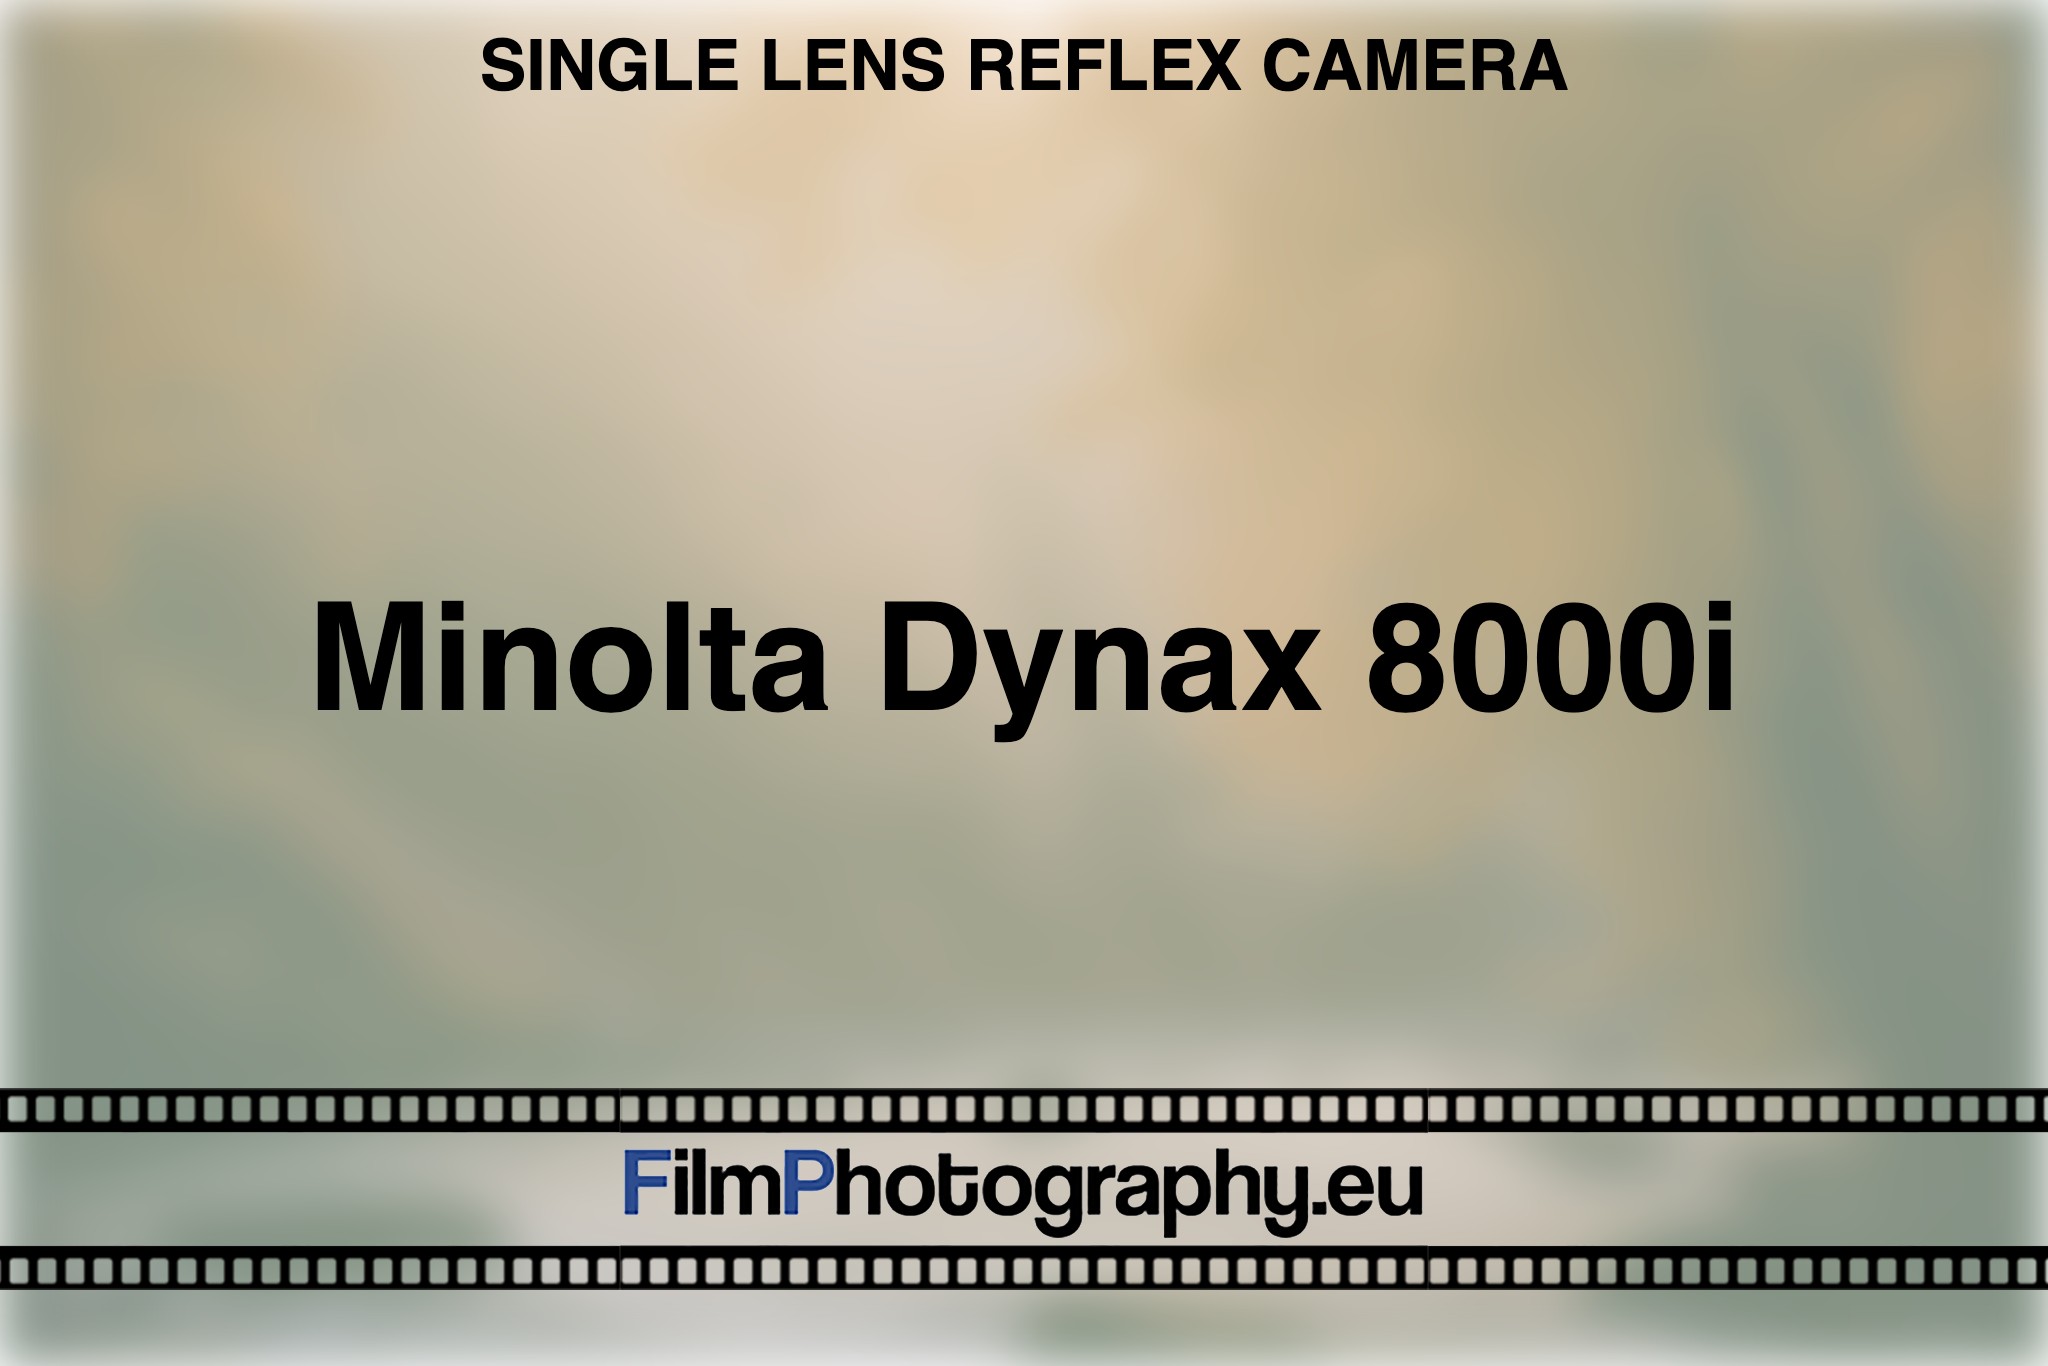 minolta-dynax-8000i-single-lens-reflex-camera-bnv